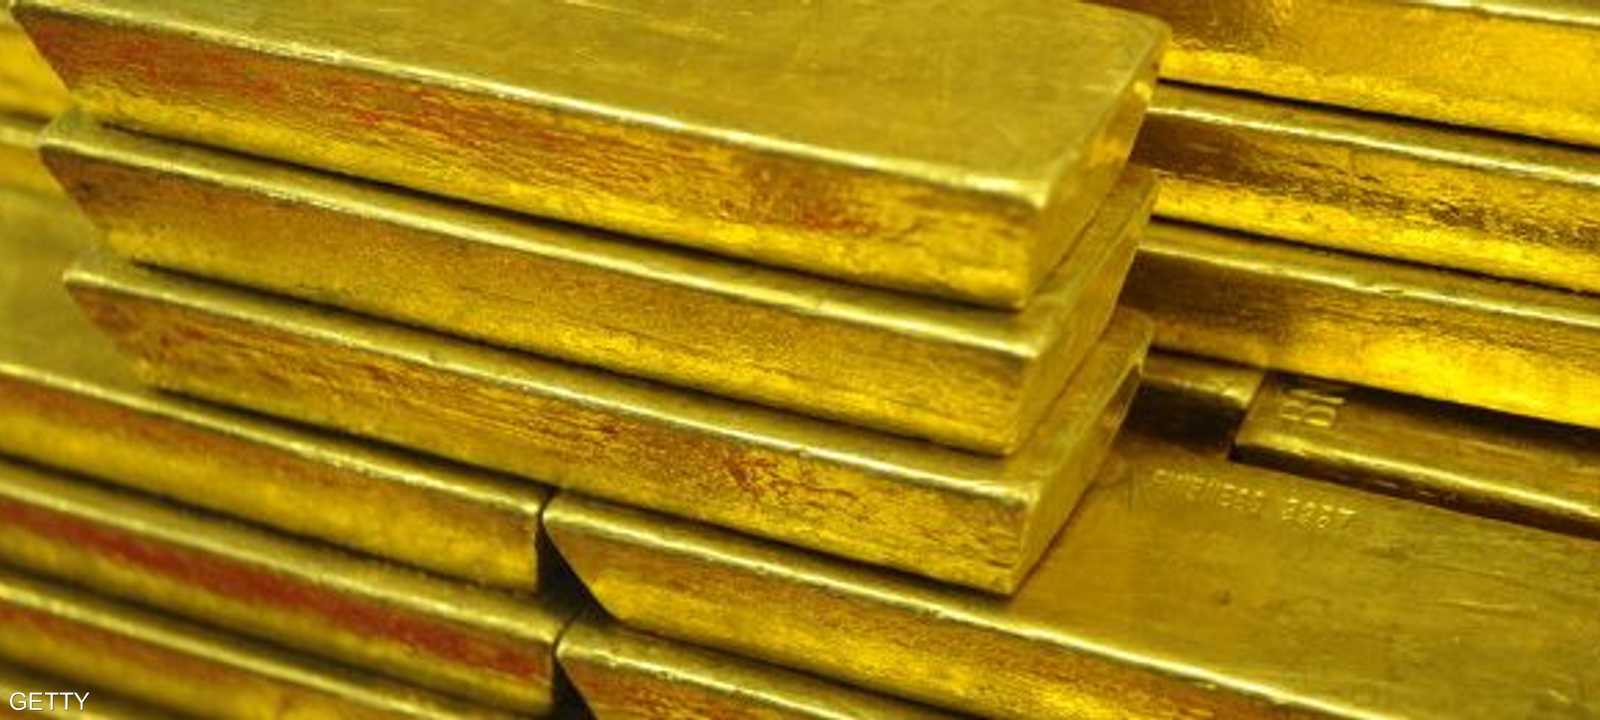 احتل السودان المرتبة الثالثة إفريقيا في إنتاج الذهب